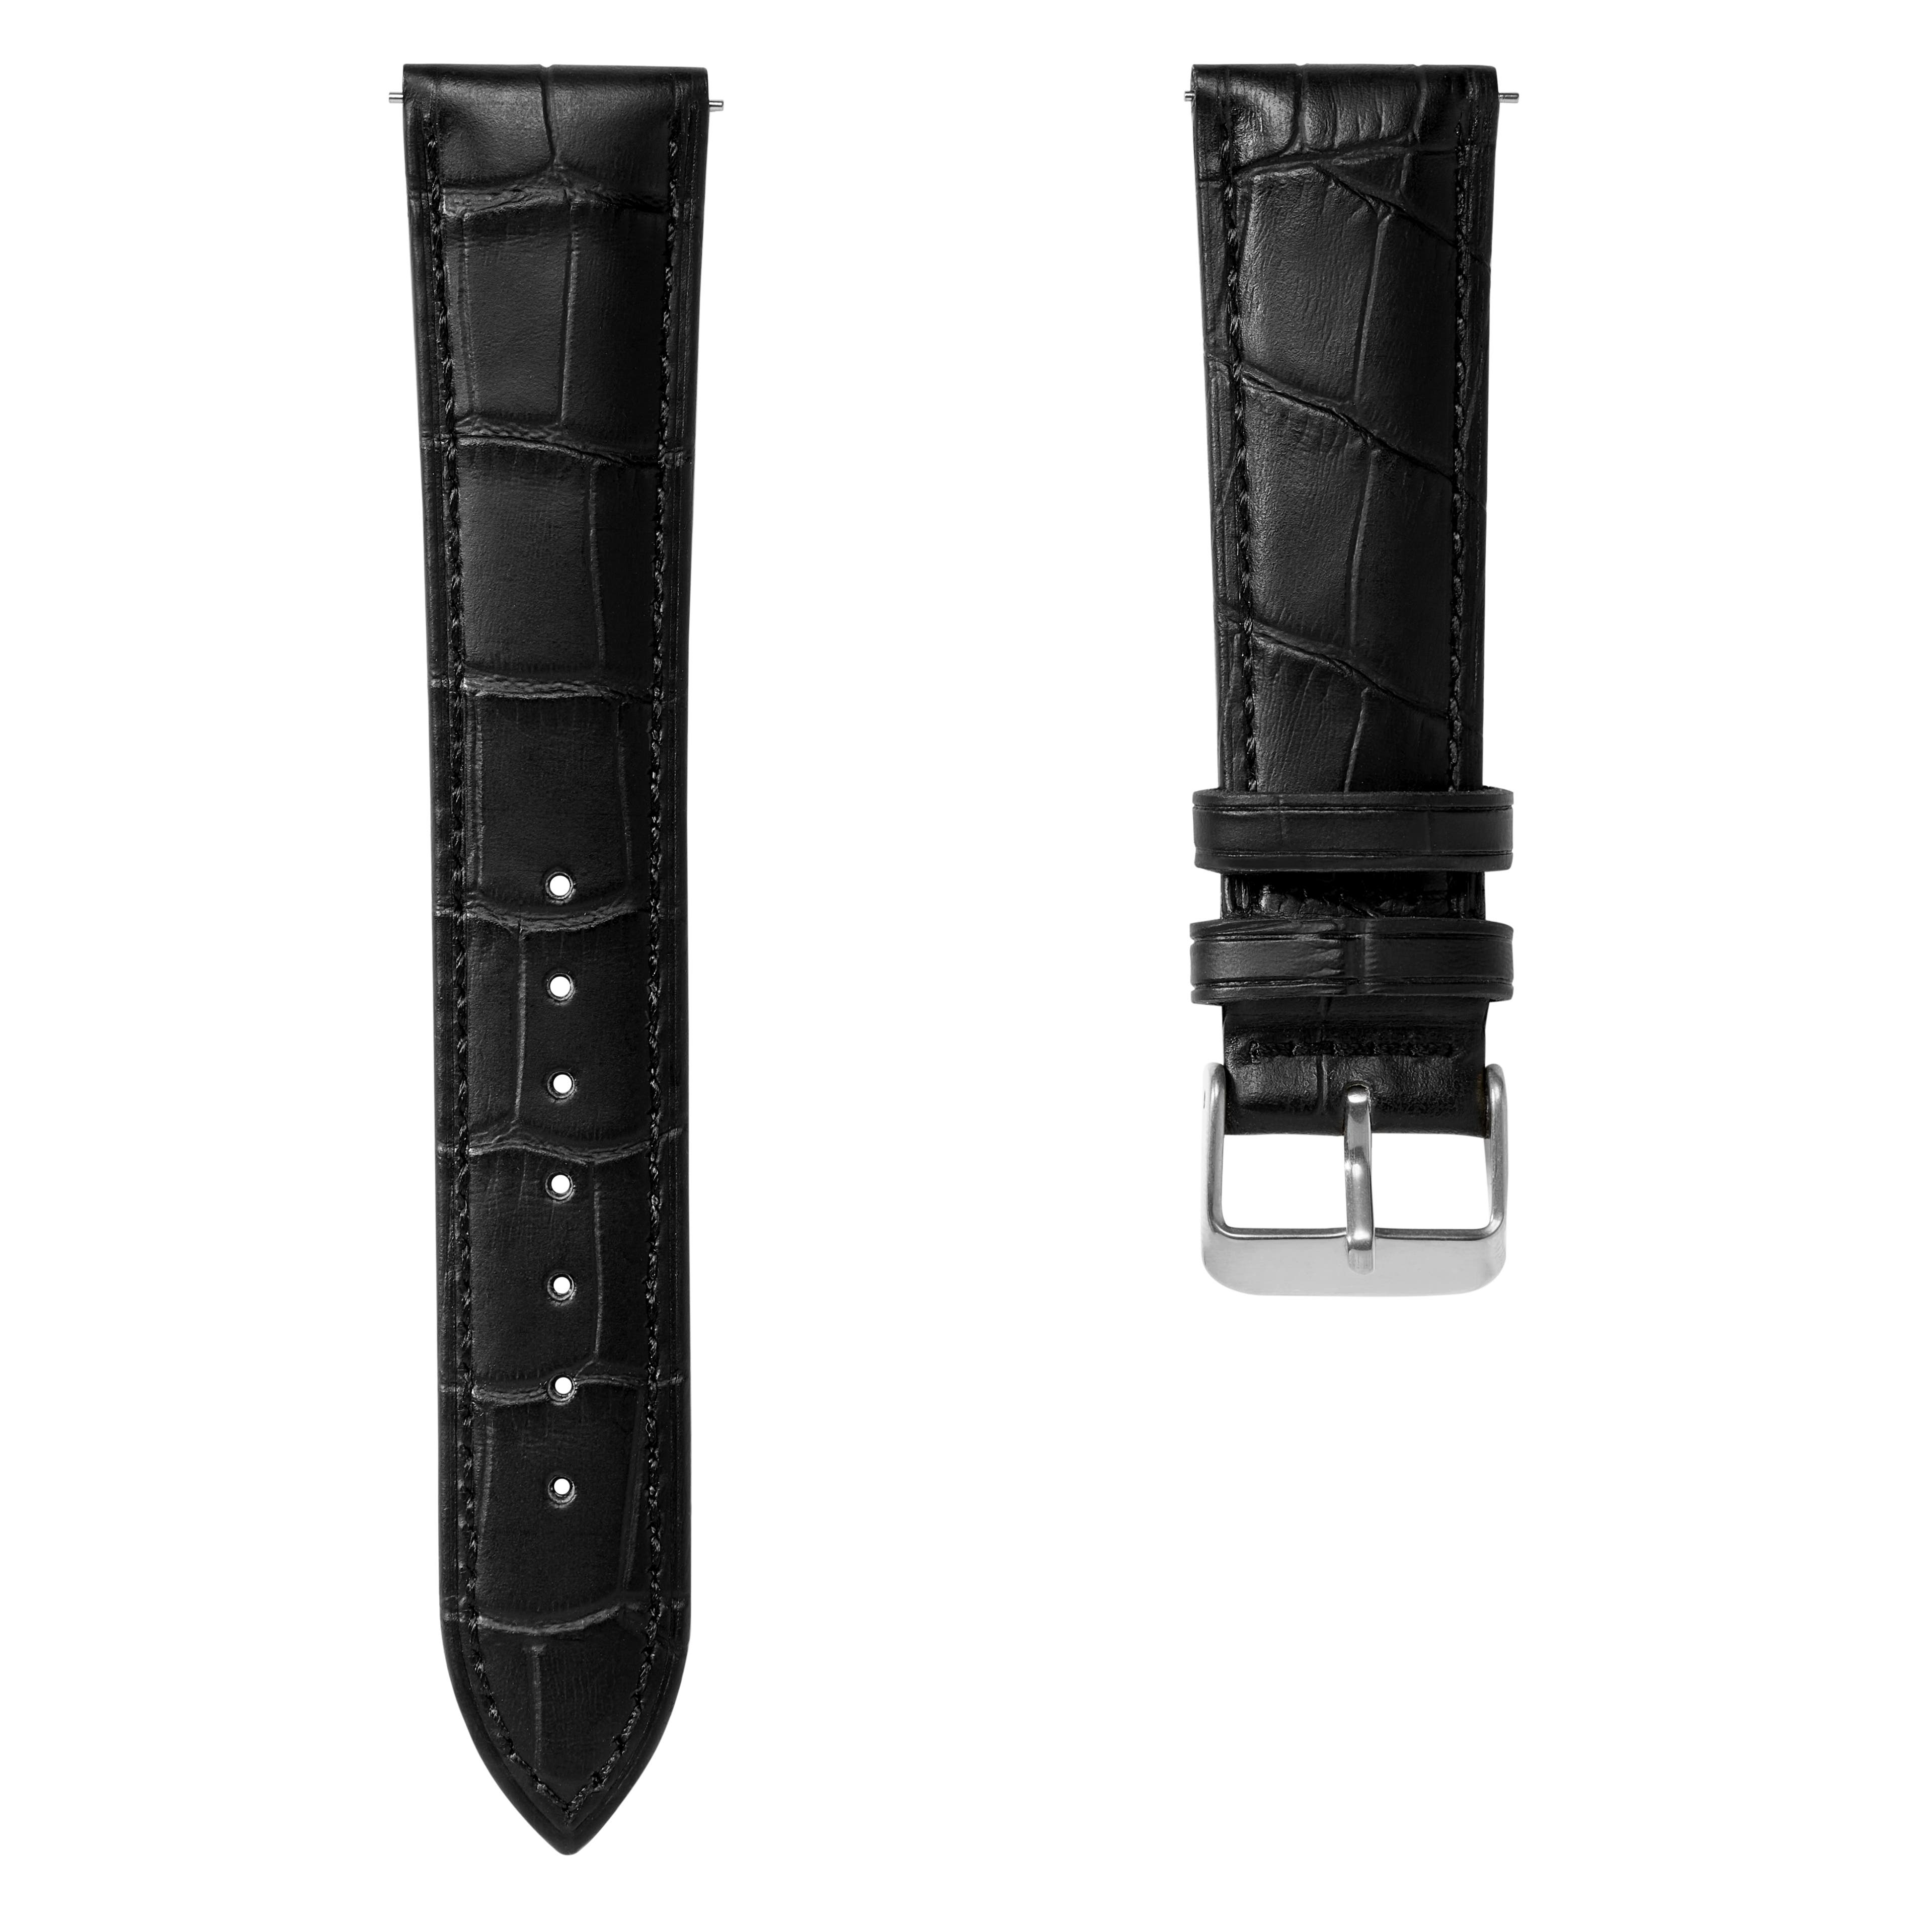 22 mm horlogeband van zwart leer met krokodillenmotief en zilverkleurige gesp – Snelsluiting